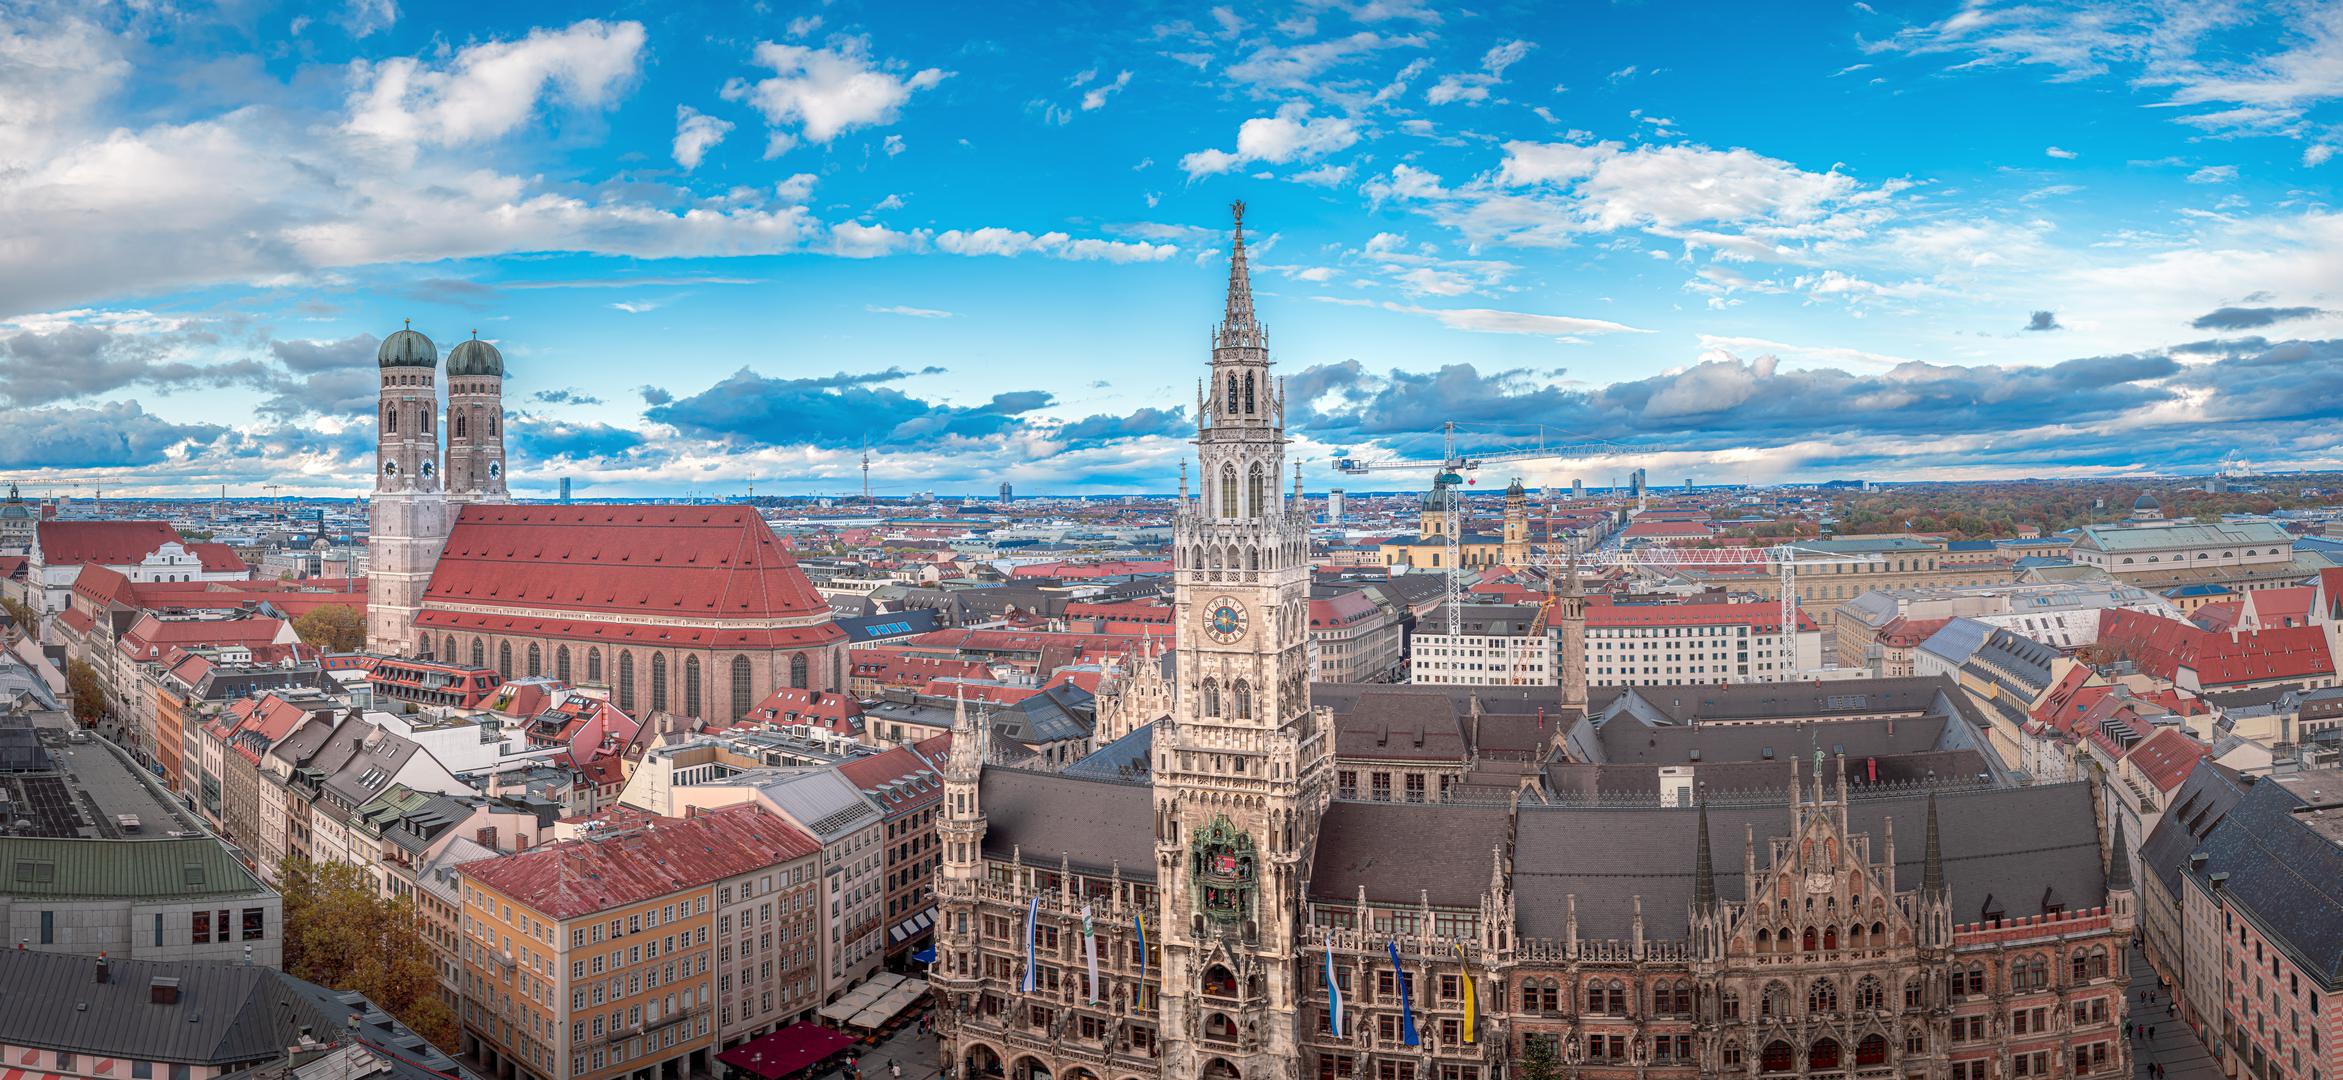 Većina ljudi vjerojatno poznaje München kao dom Oktoberfesta, najvećeg svjetskog festivala piva. Neki također znaju da grad ima brojne muzeje, parkove i naravno, pivnice. Osim toga, to je rastuća europska žarišna točka za digitalne nomade. Ali koliko zapravo znate o glavnom gradu Bavarske? Pa, ne brinite jer s vama dijelimo 10 fascinantnih činjenica o Münchenu!